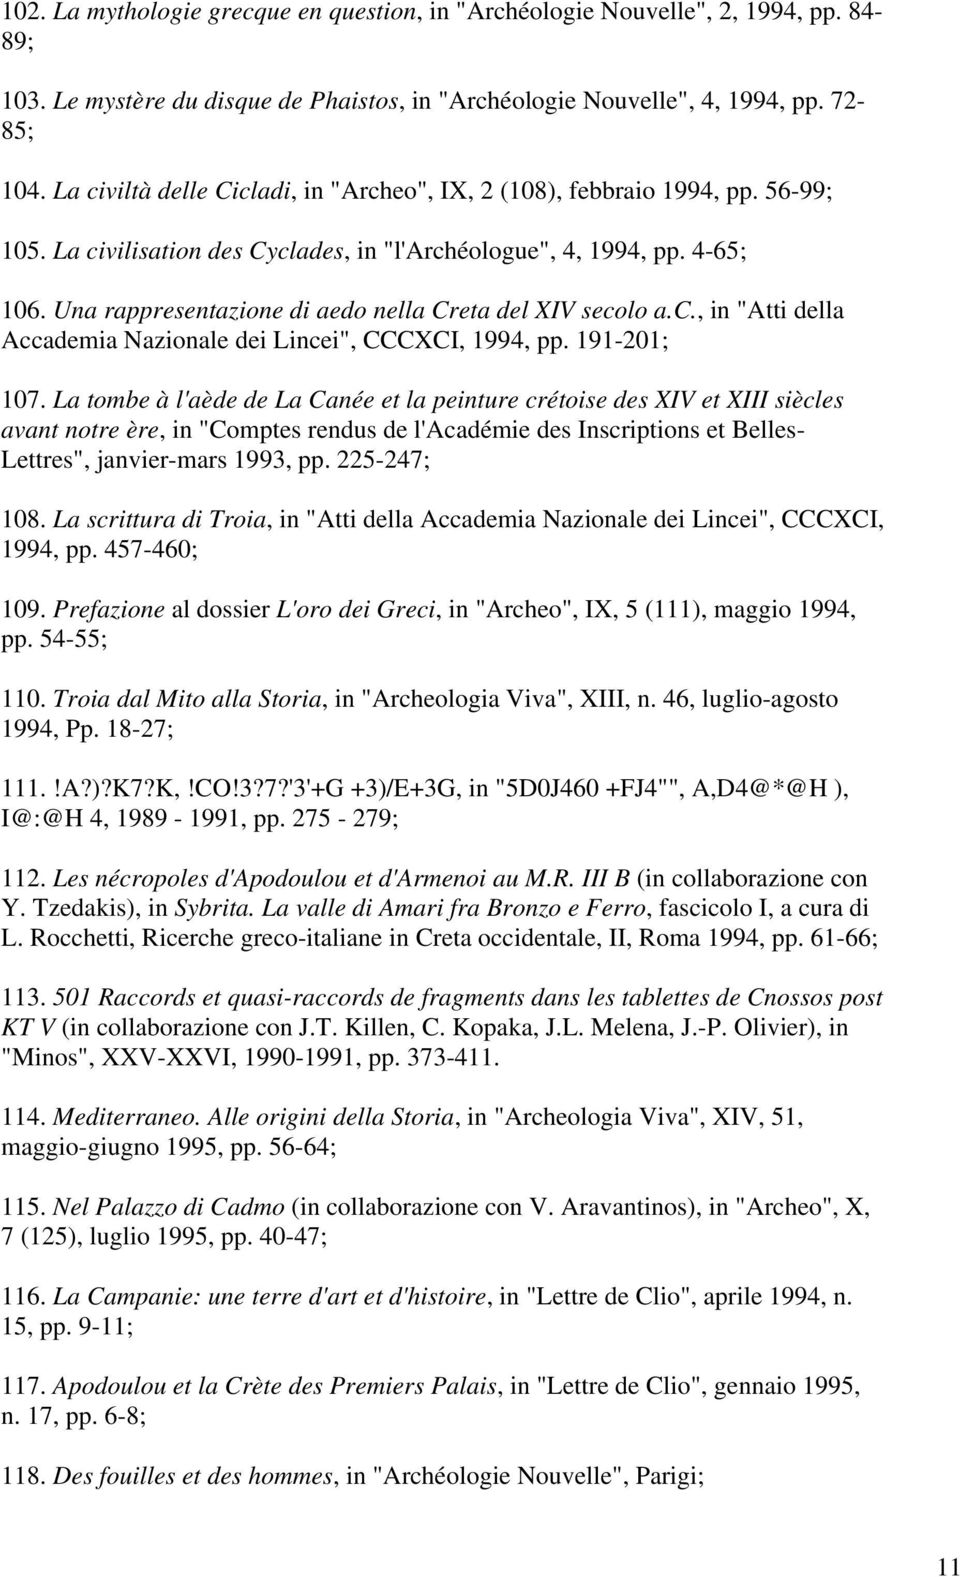 Una rappresentazione di aedo nella Creta del XIV secolo a.c., in "Atti della Accademia Nazionale dei Lincei", CCCXCI, 1994, pp. 191-201; 107.